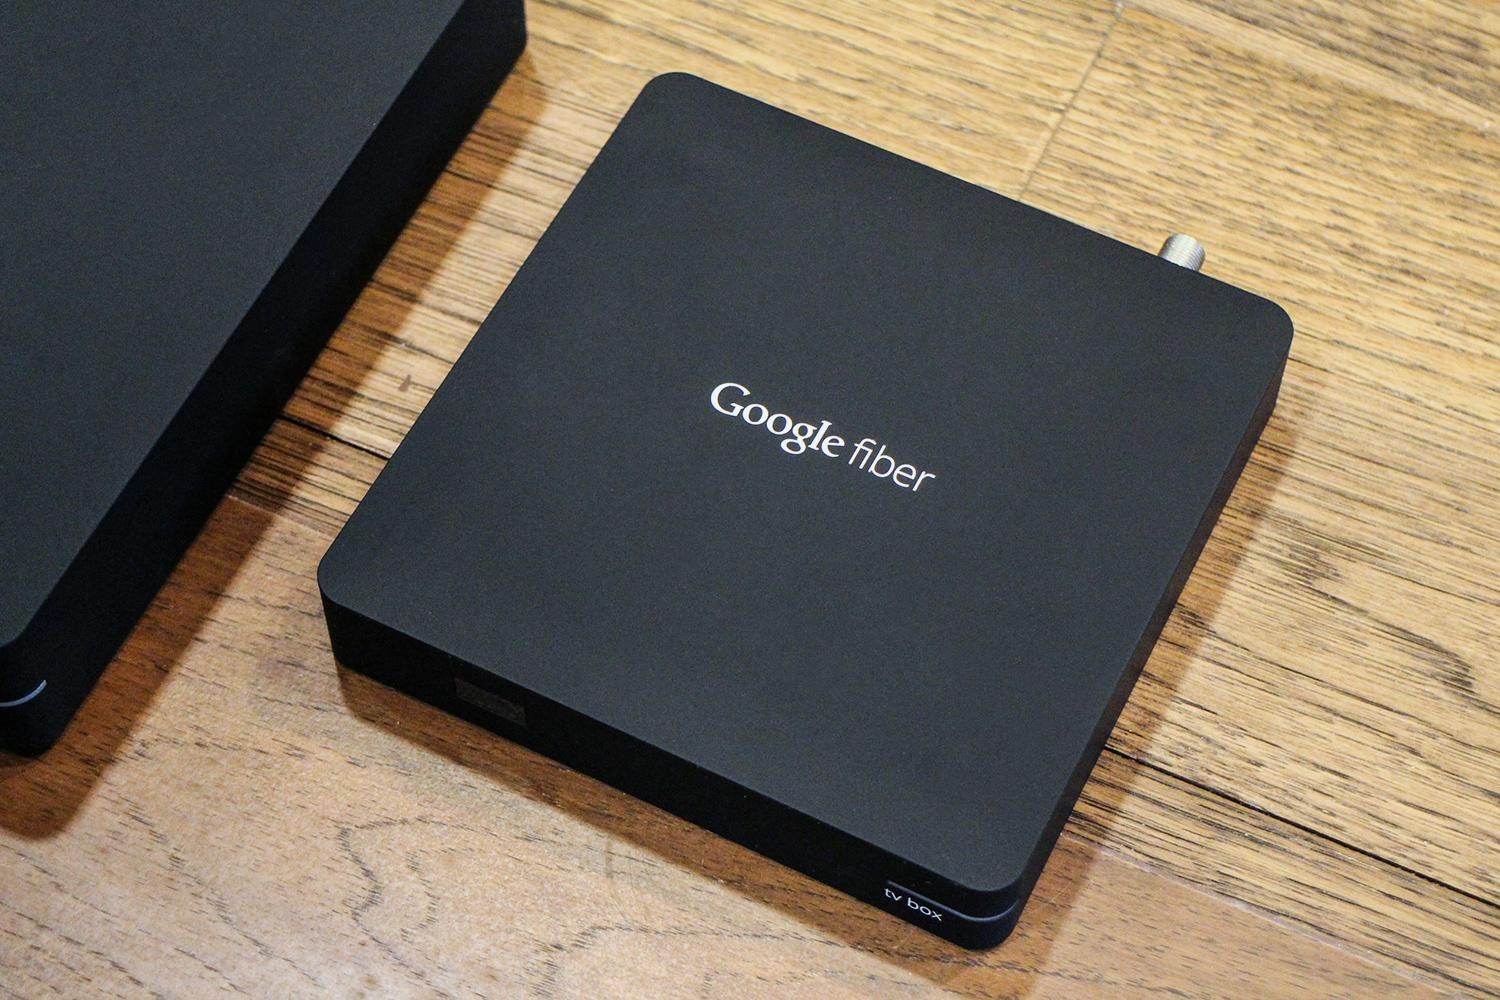 google-fiber-tv-box-1500x1000.jpg